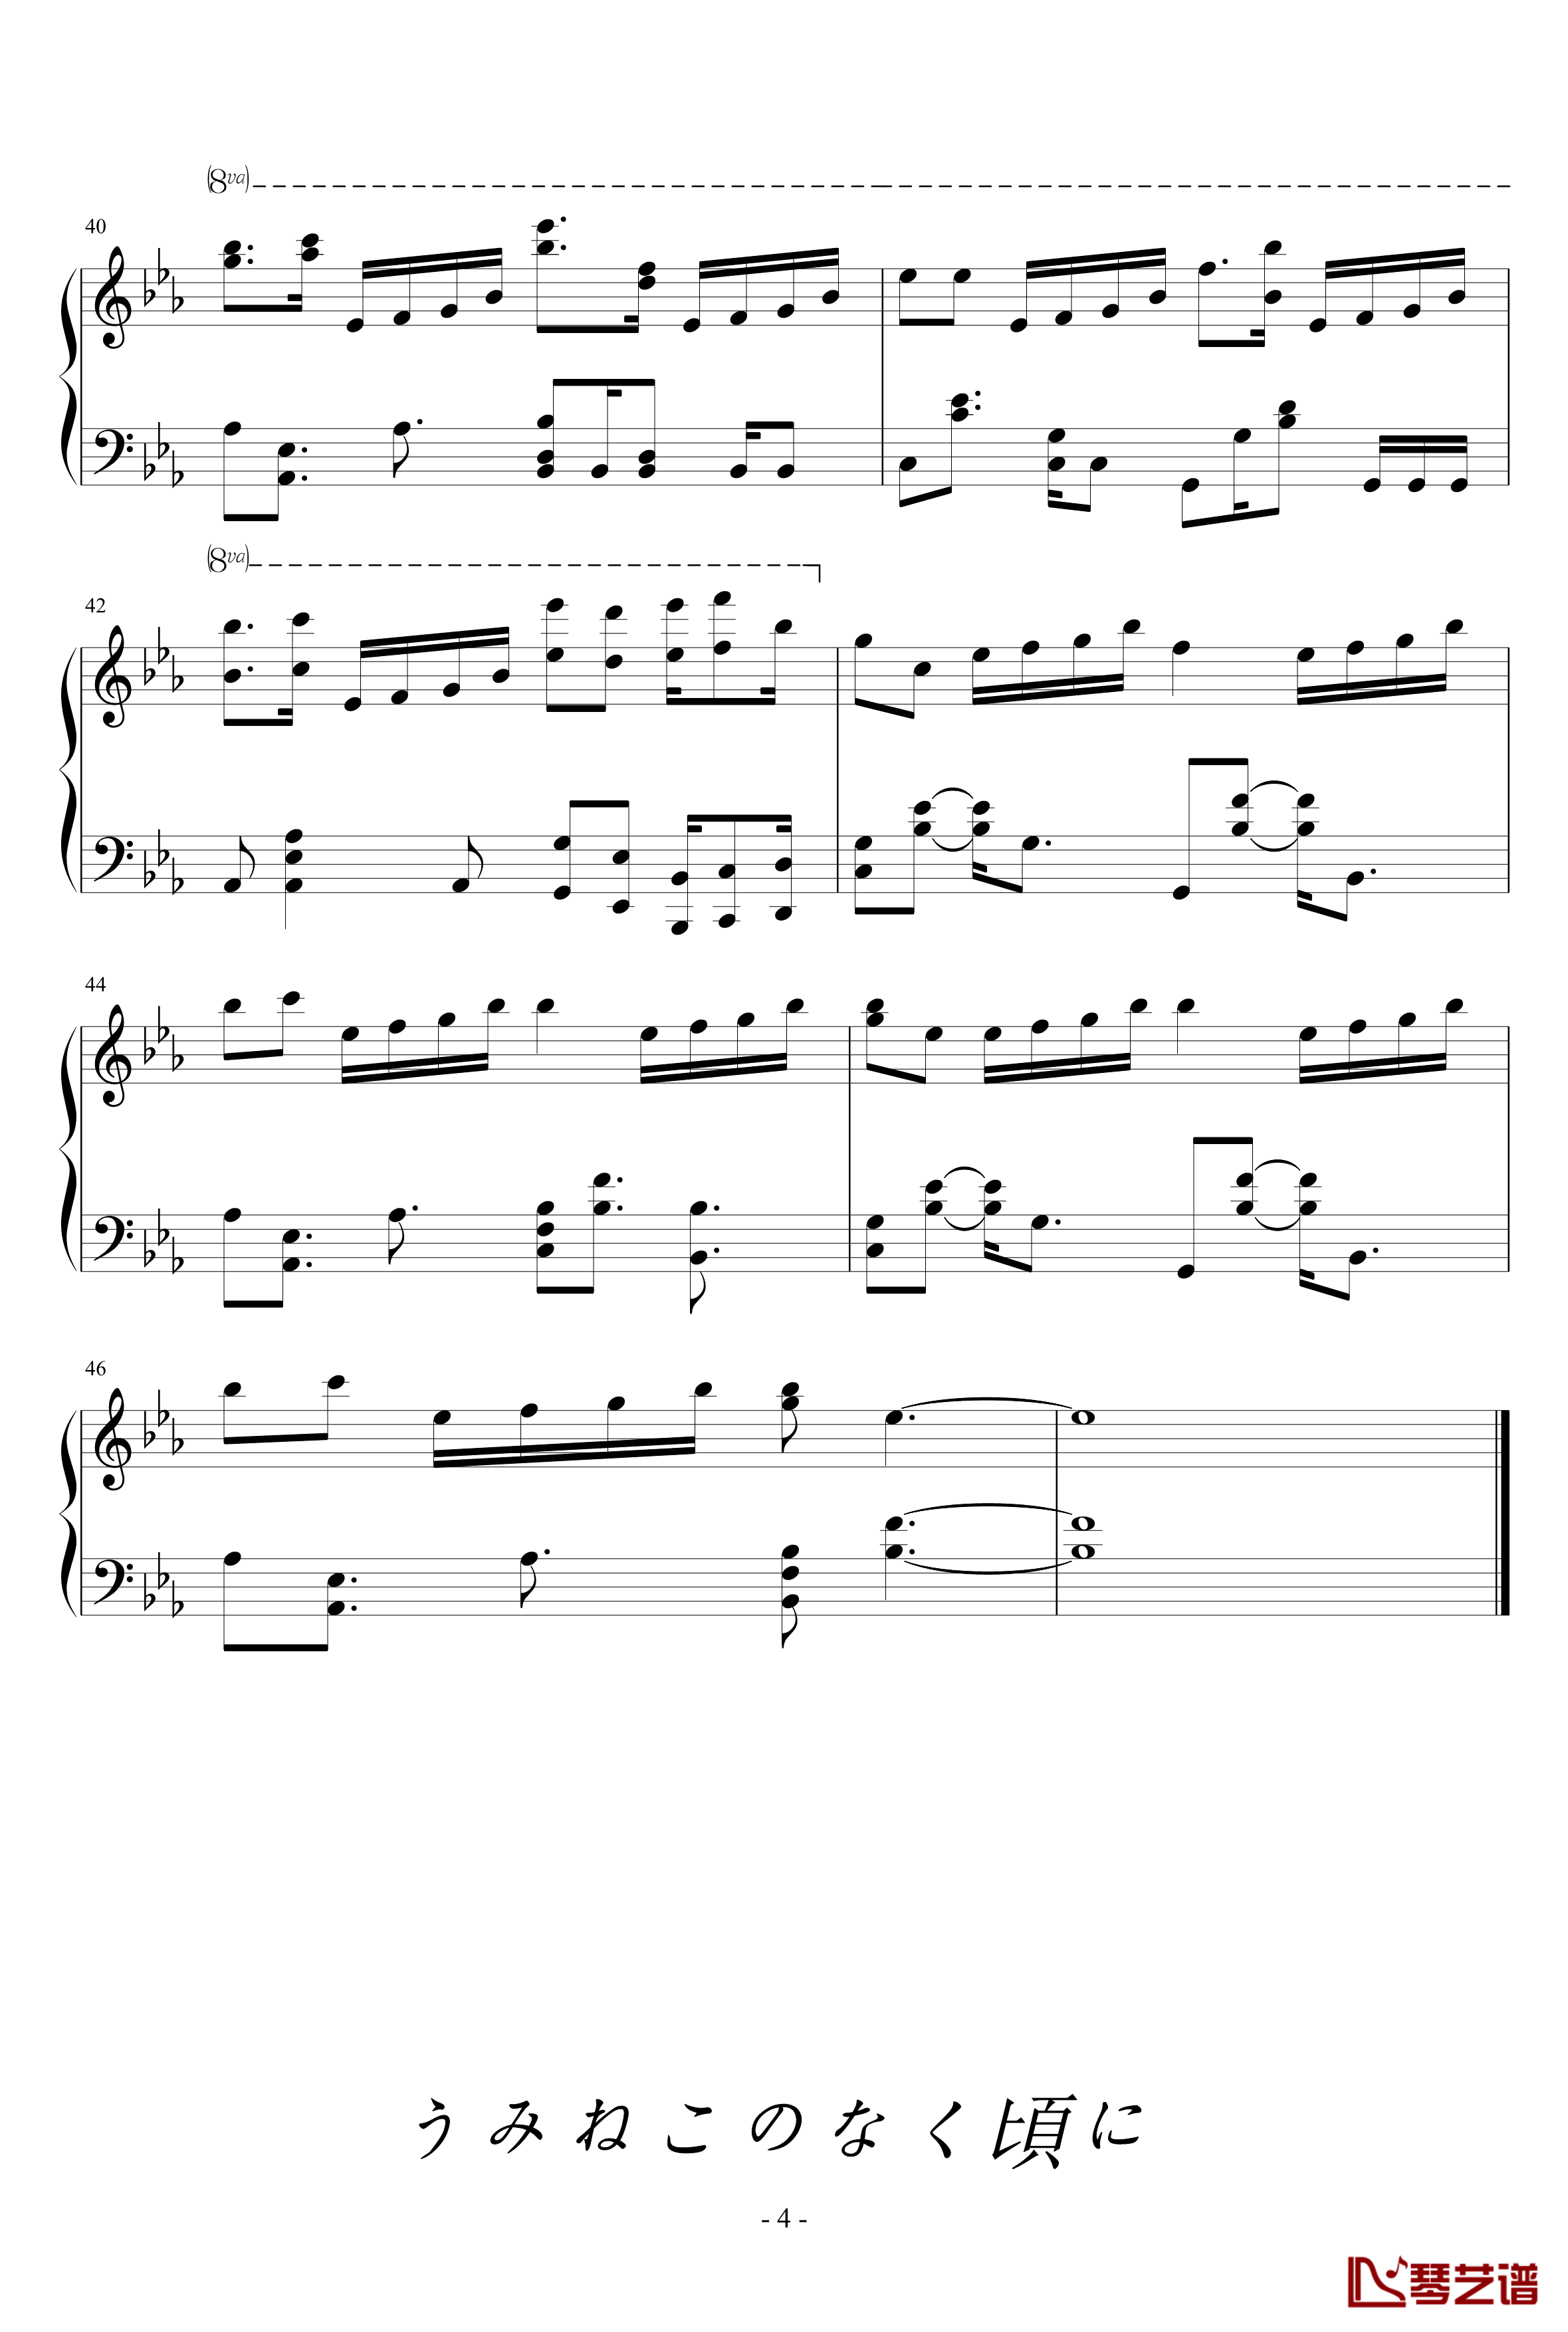 海猫BGM钢琴谱-Answer-海猫鸣泣之时4